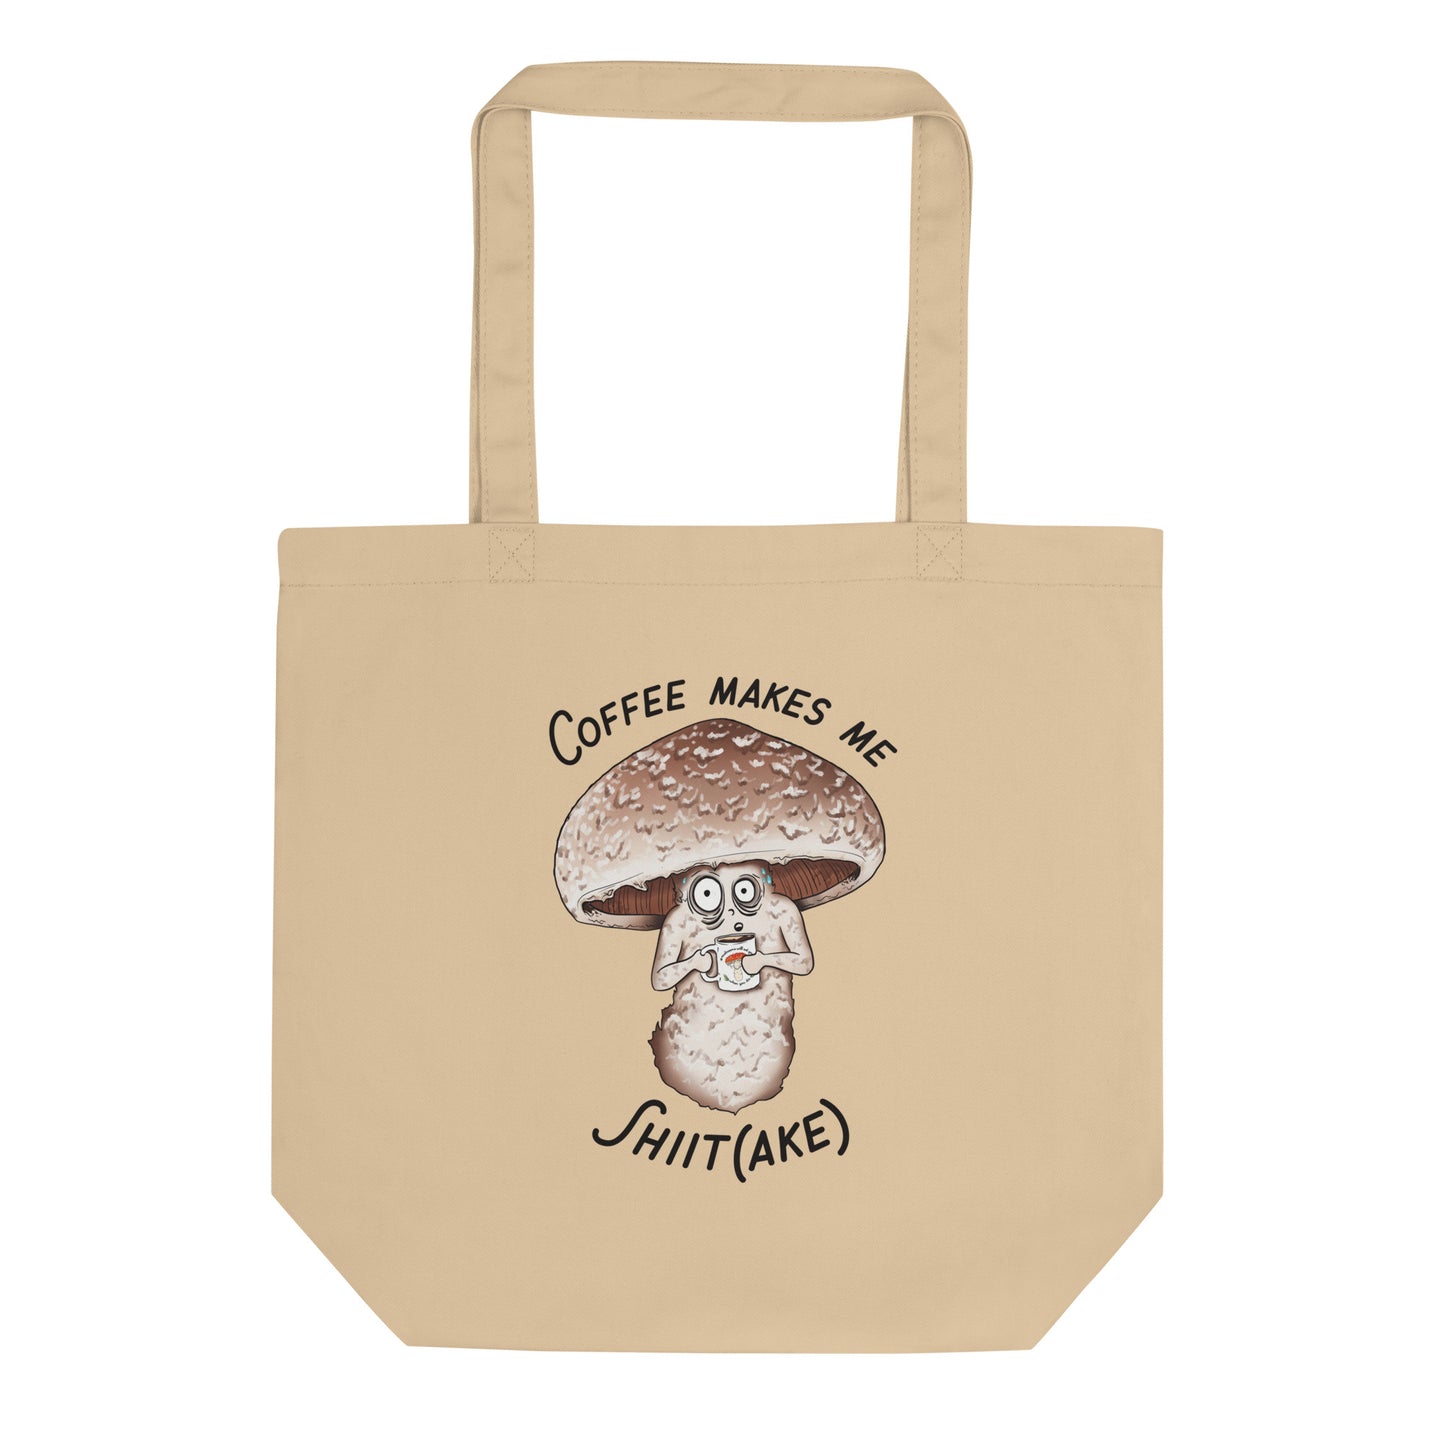 Coffee Makes Me Shiit(ake) | Eco-Friendly Tote Bag | Funny Mushroom Artwork